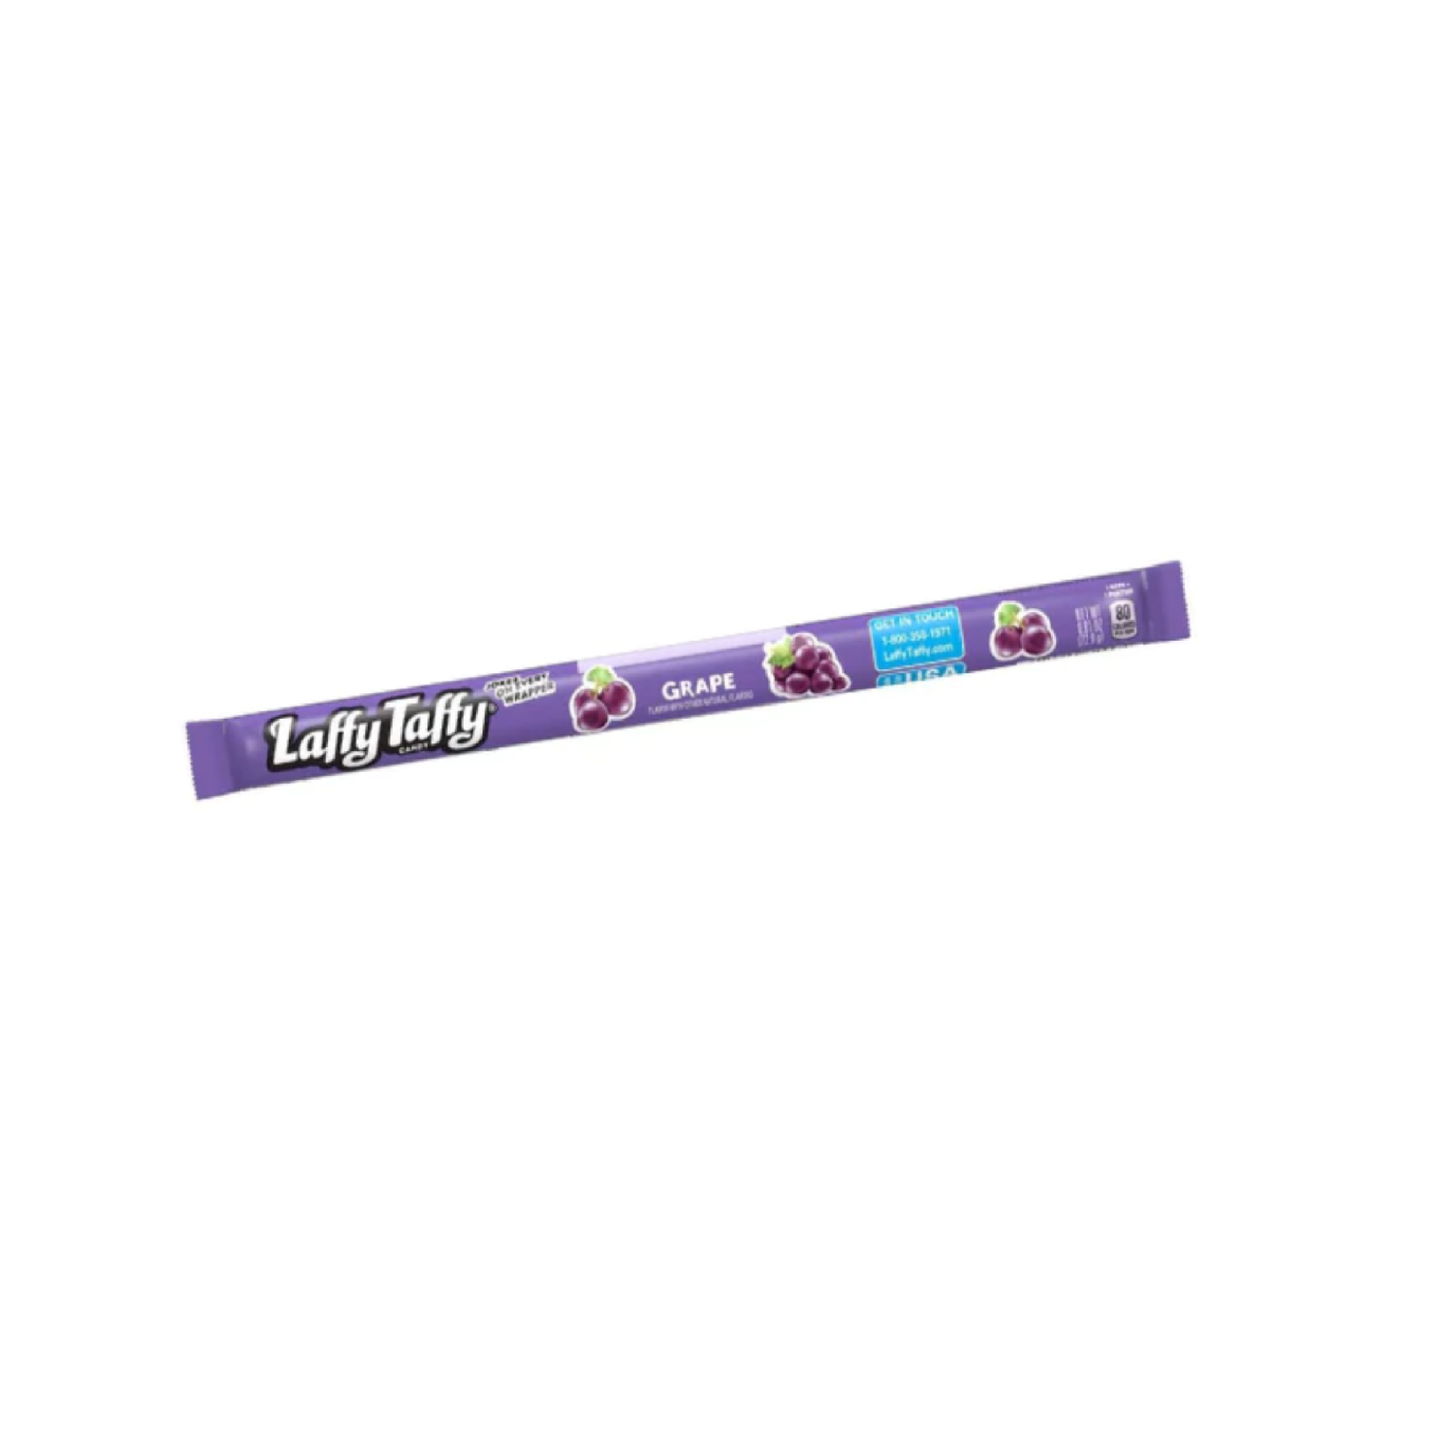 Laffy Taffy Rope Grape Candy